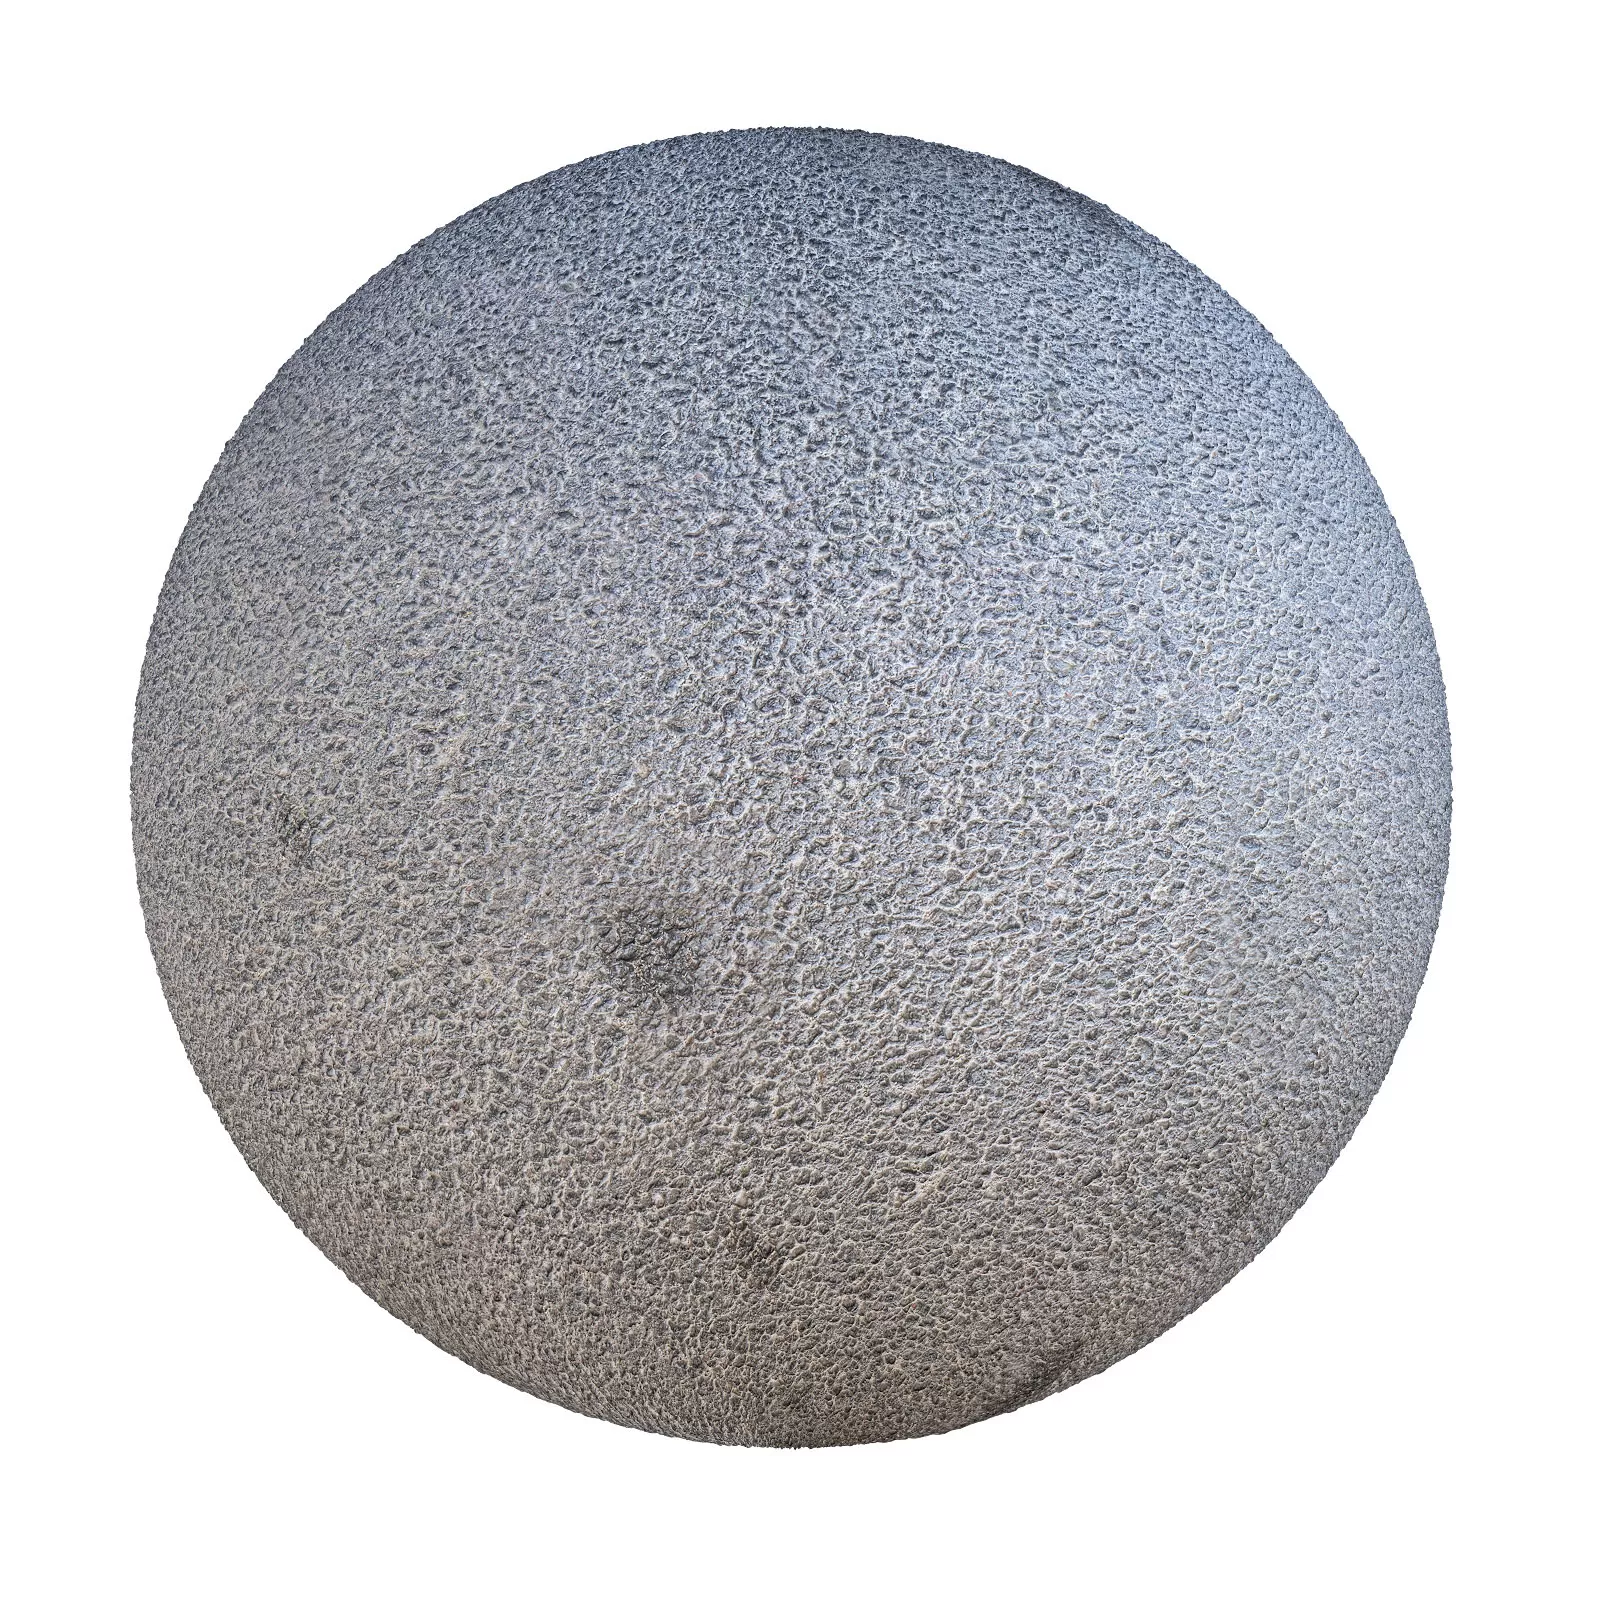 Cgaxis Pbr 15 Grey Asphalt With Spots 2